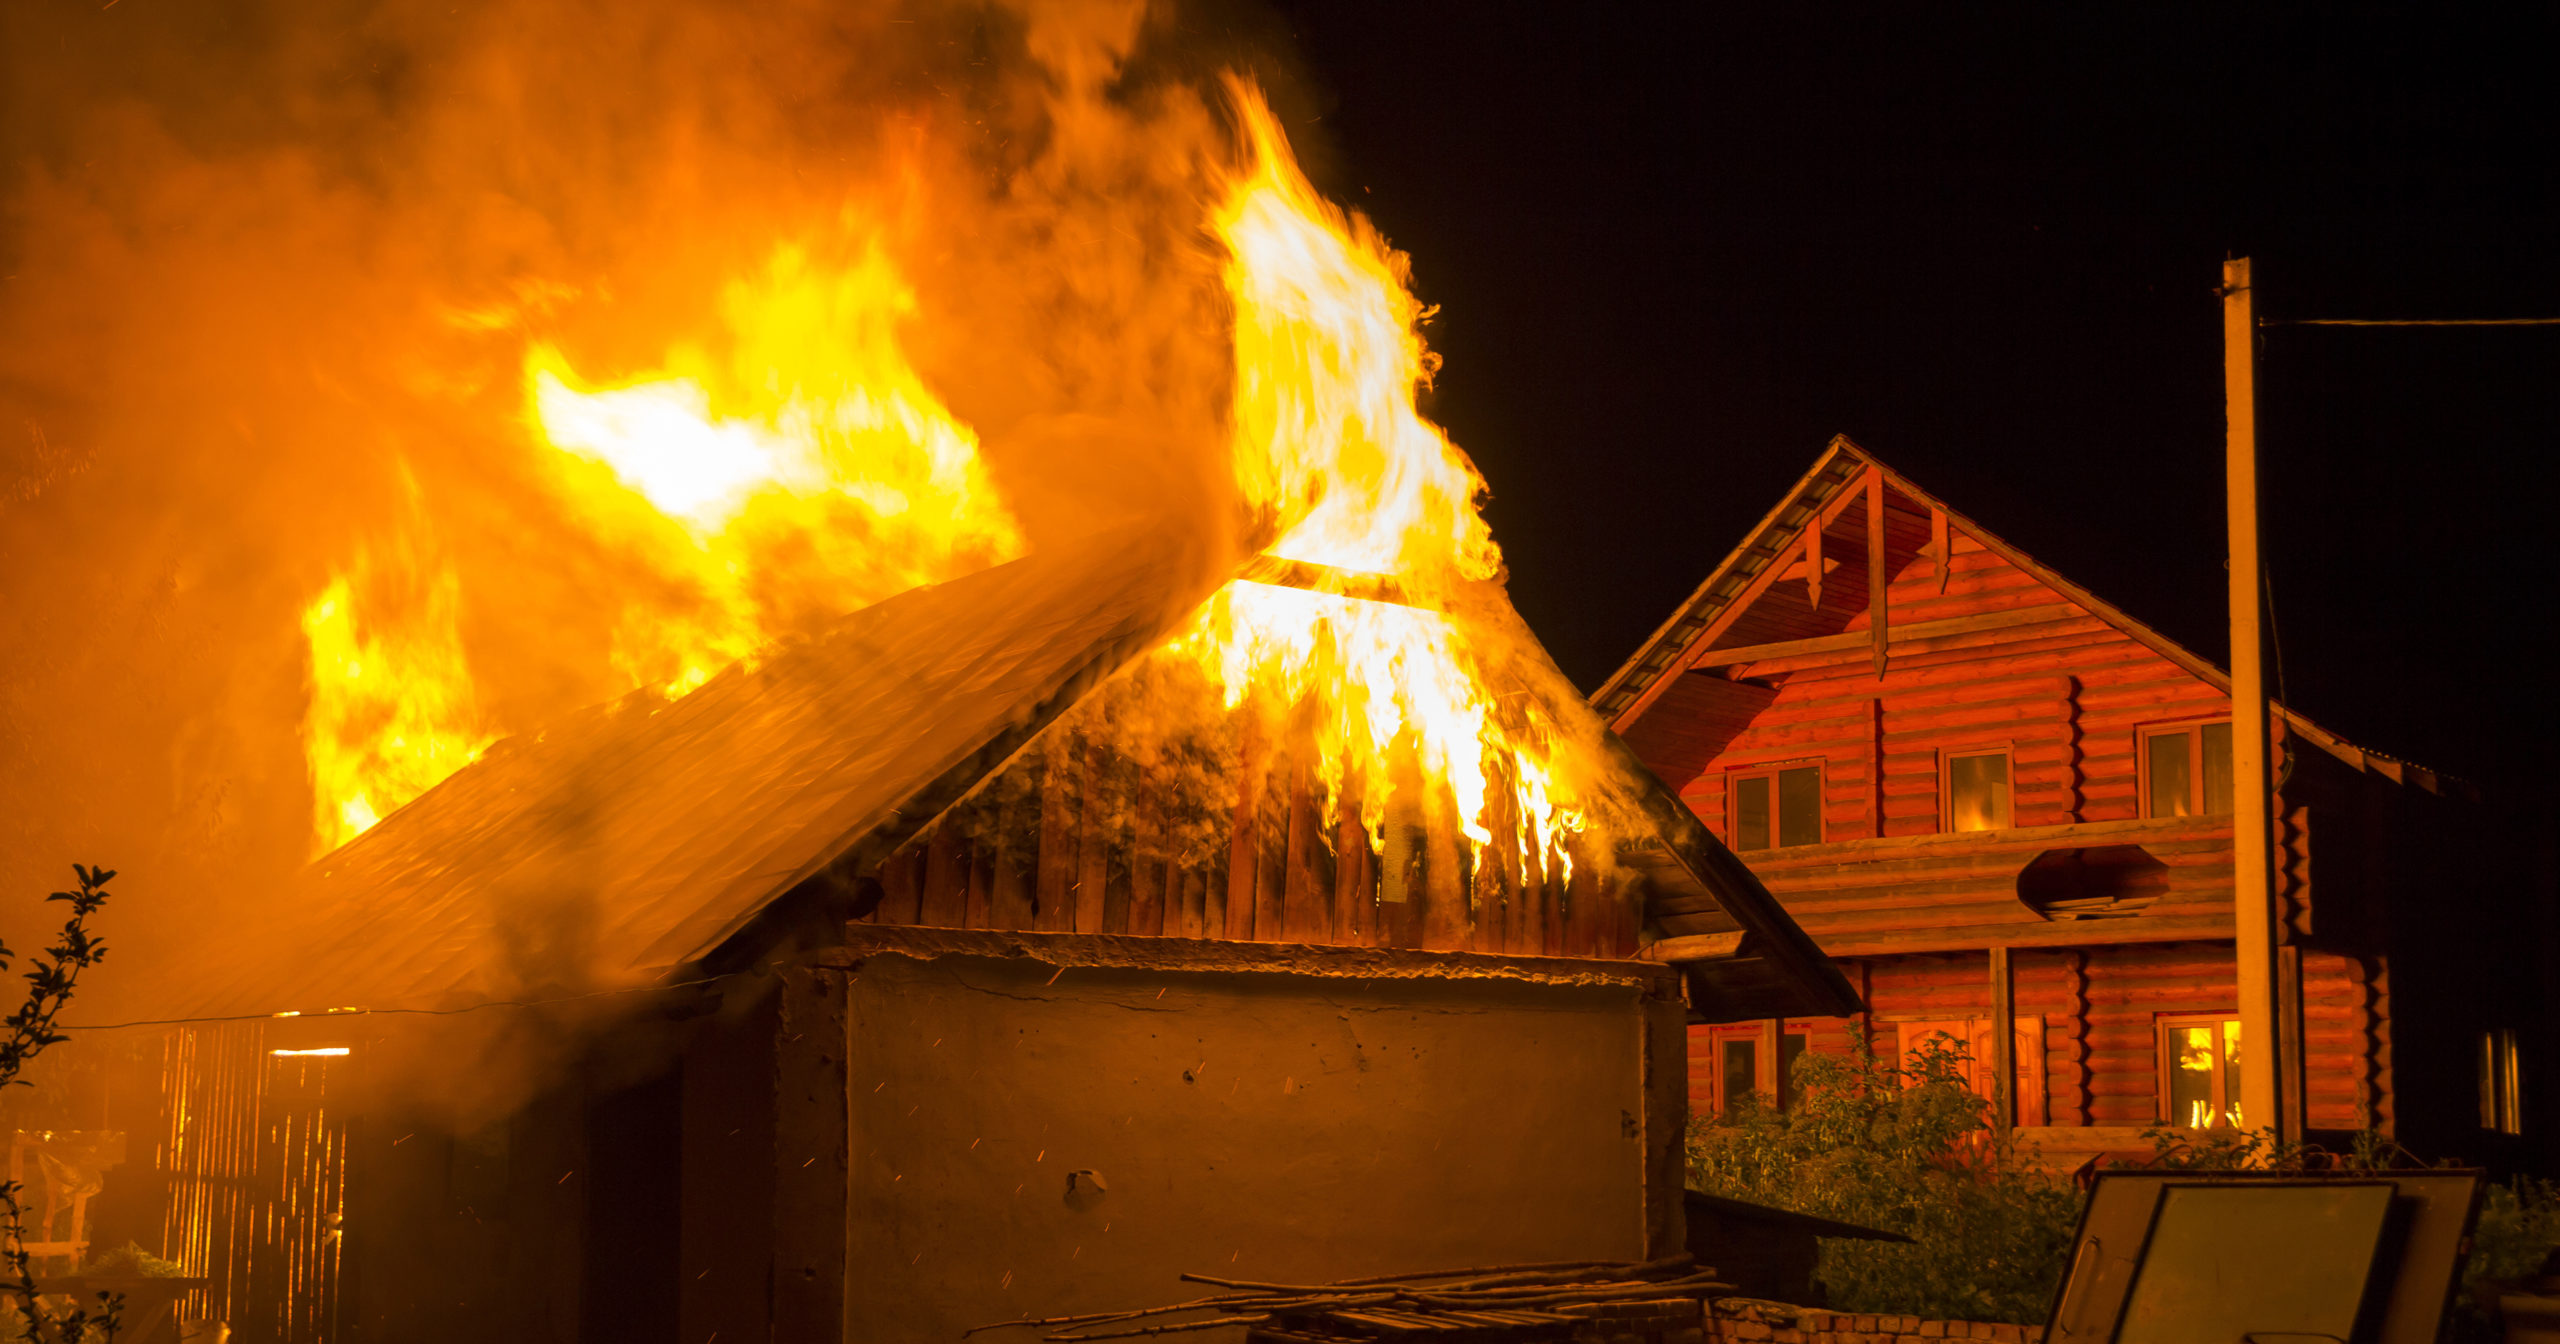 تفسير حلم سقف البيت يحترق وتفسير حلم حريق البيت للمتزوجه